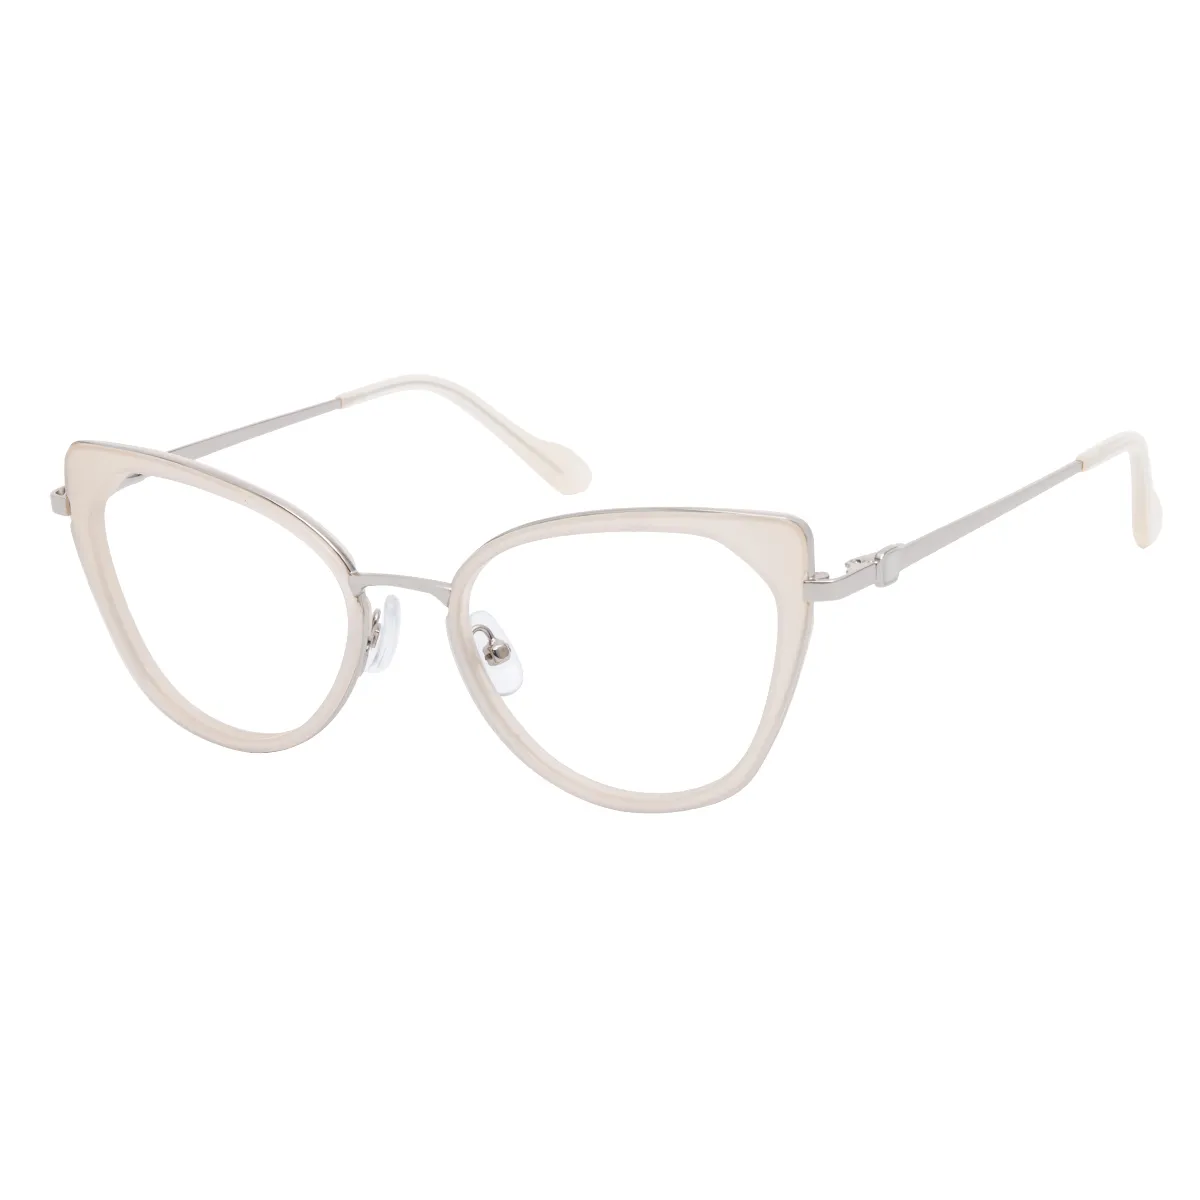 Mireille - Cat-eye White Glasses for Women